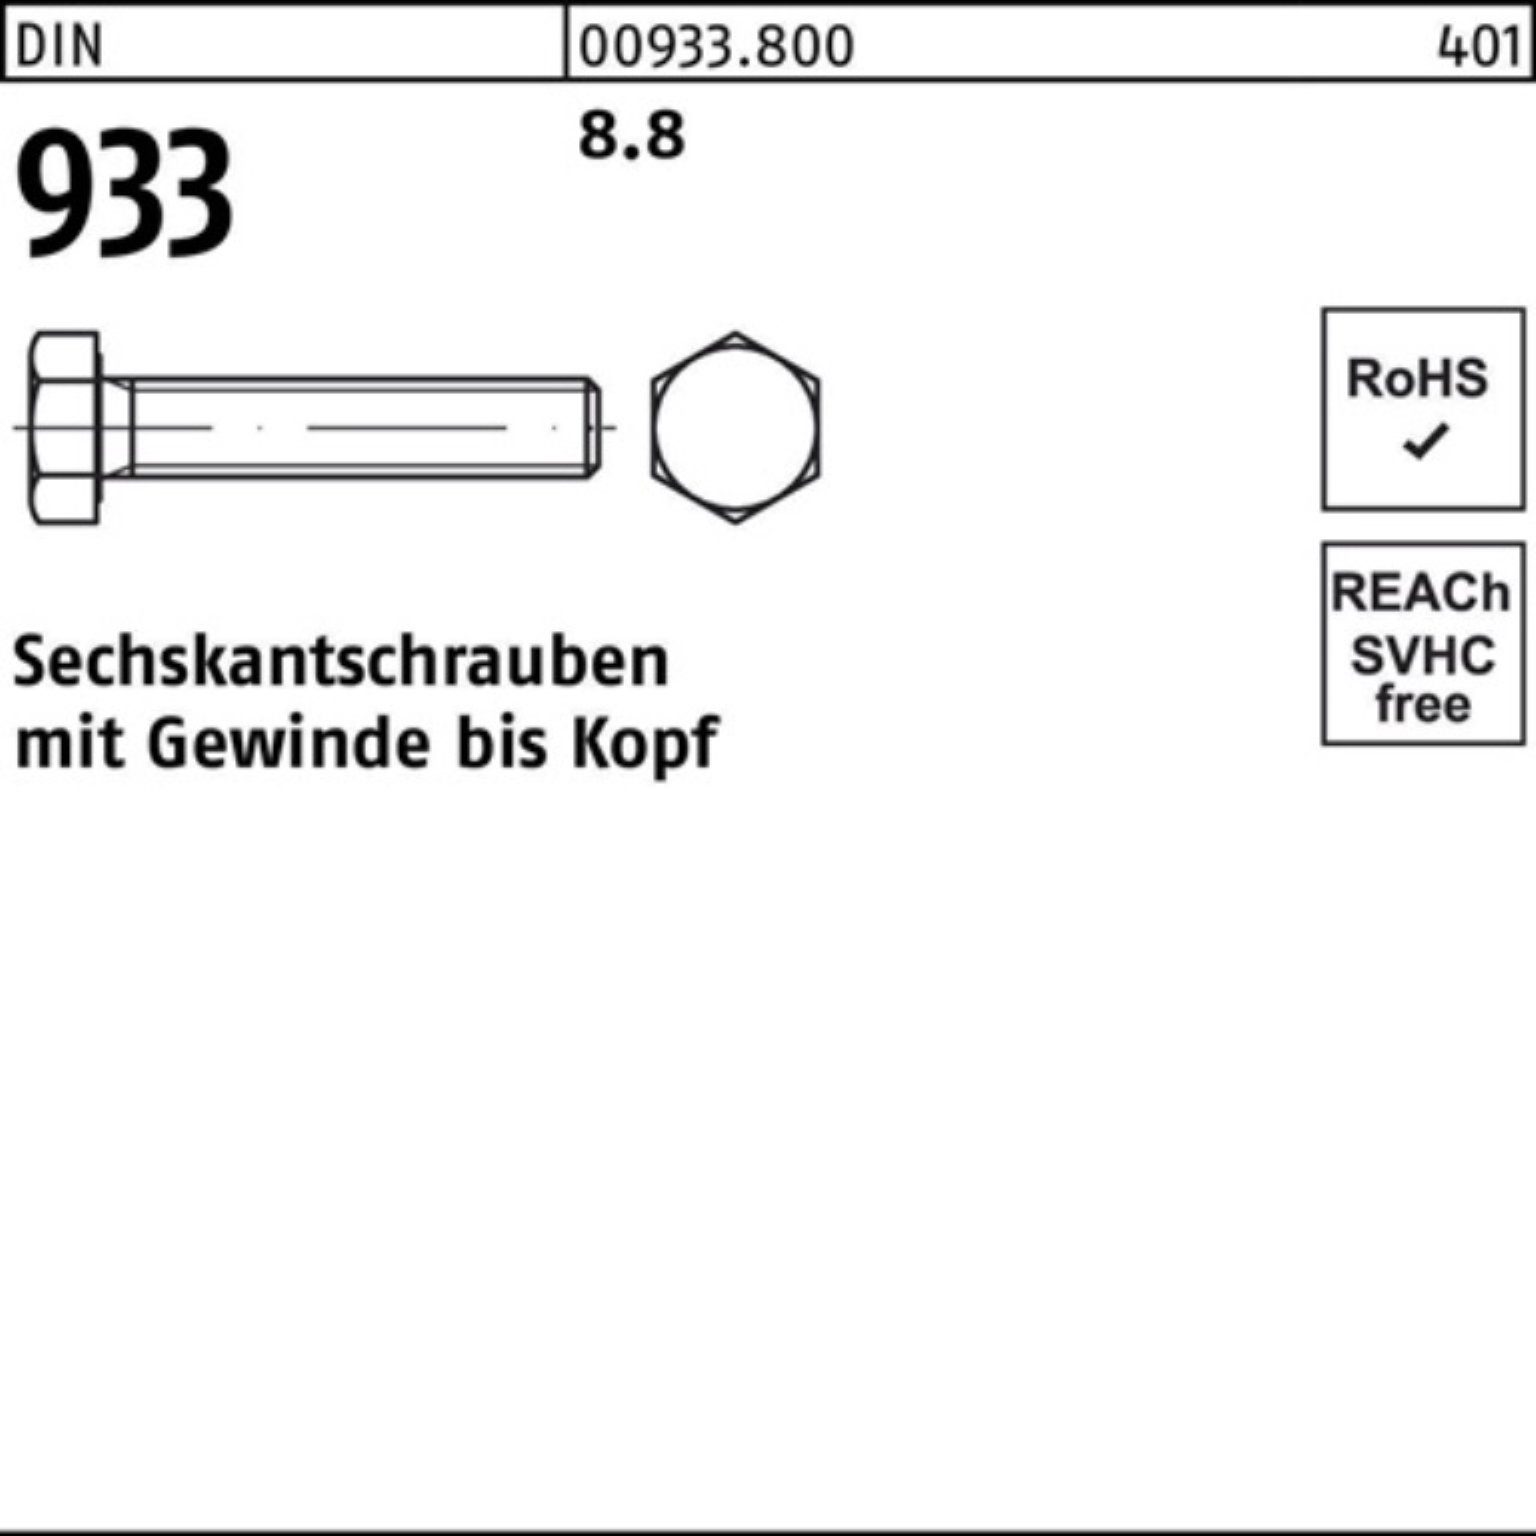 Reyher Sechskantschraube 100er Pack Sechskantschraube 100 DIN Stück M8x 933 VG 933 8.8 170 DIN